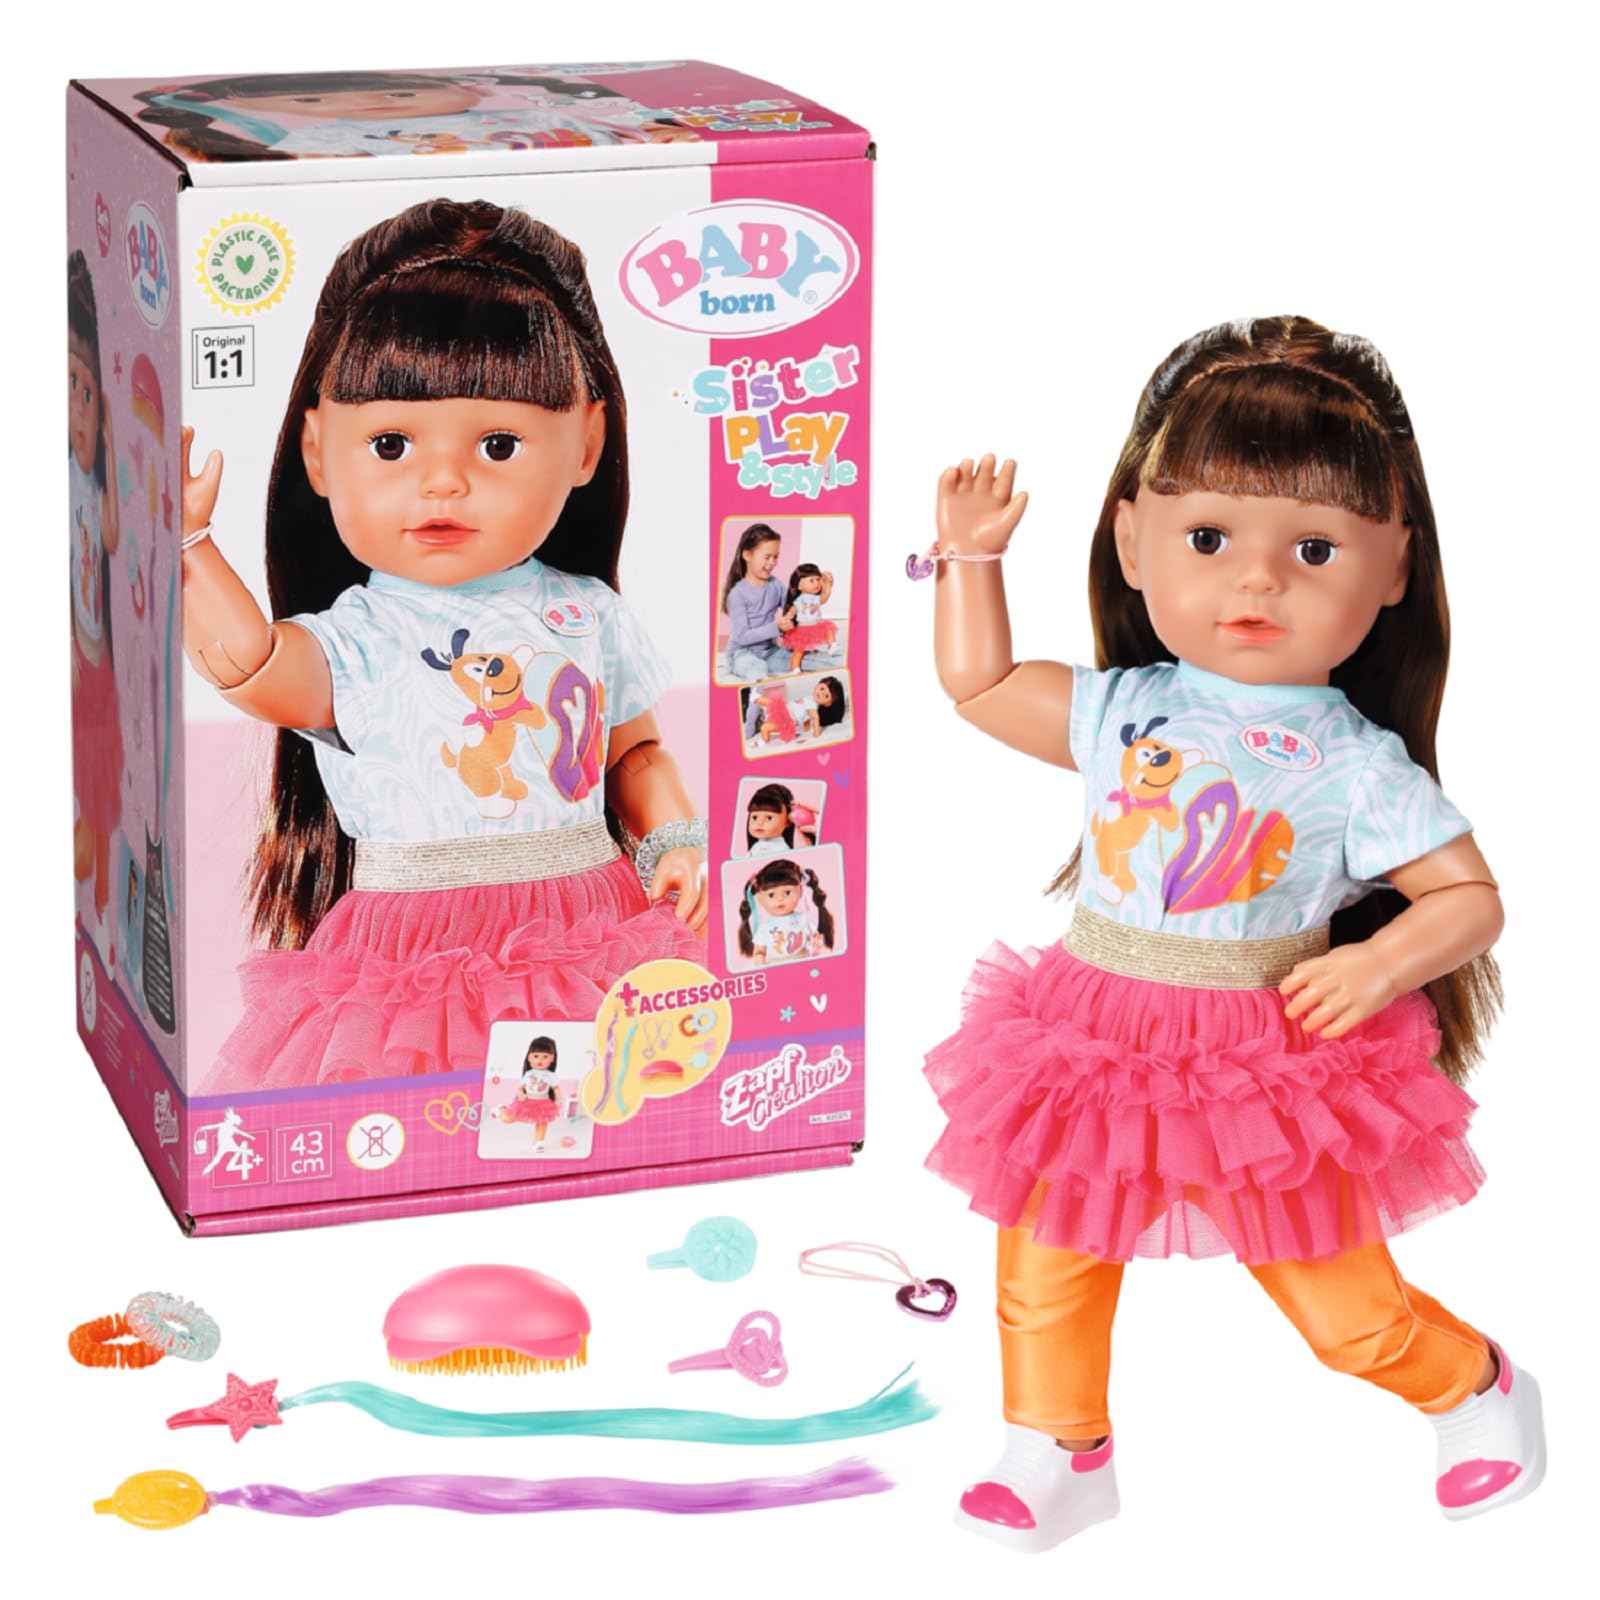 BABY born Sister Play & Style Brunette 43 cm, Puppe mit Haaren und 8 Funktionen für Kinder ab 4 Jahren, funktioniert ohne Batterie, 835371 Zapf Creation